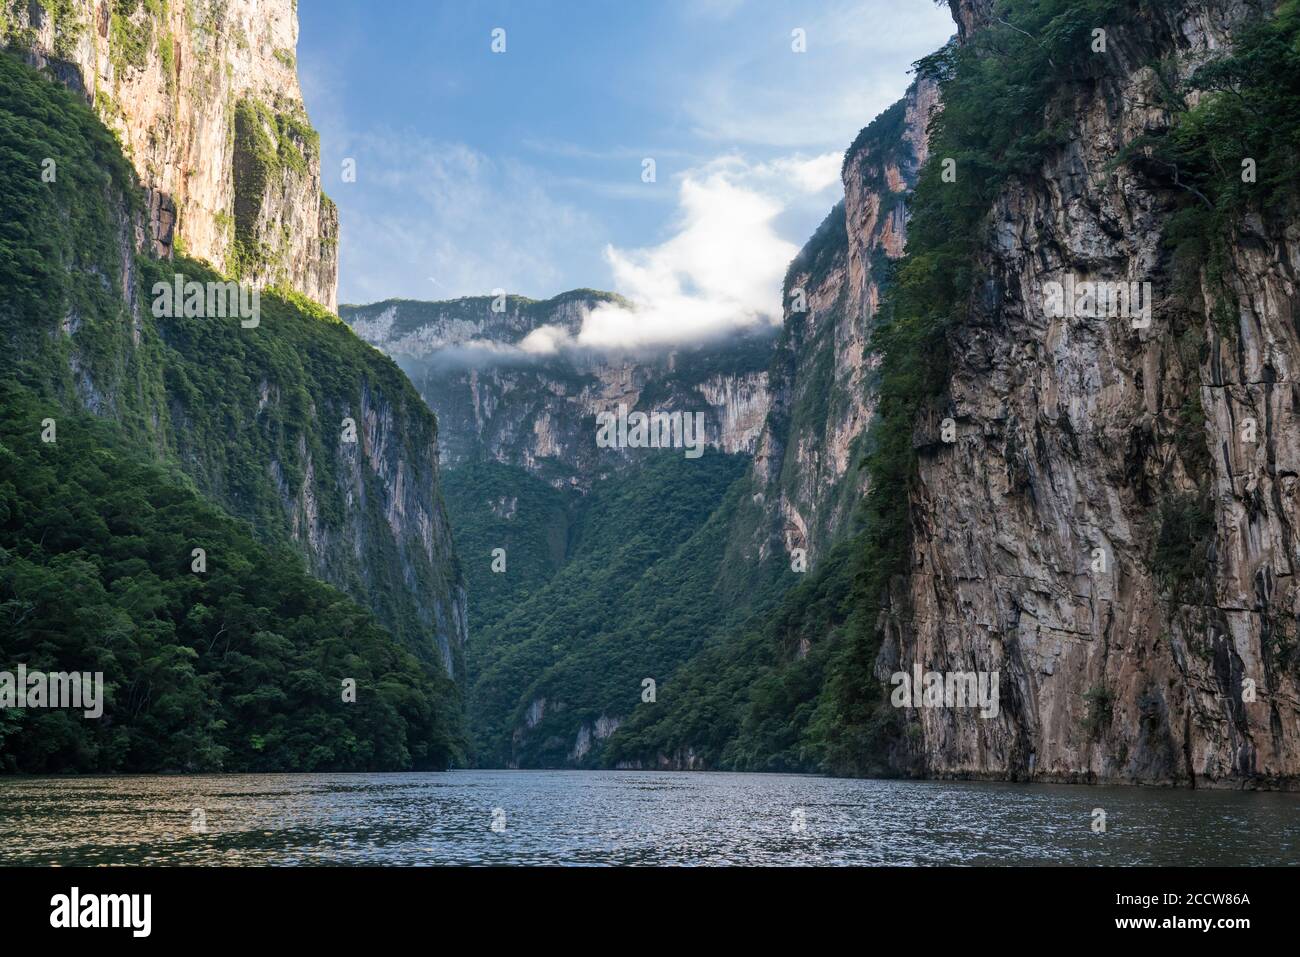 Der Grijalva Fluss bildete die schieren Felswände des Sumidero Canyon National Park, Chiapas, Mexiko Stockfoto